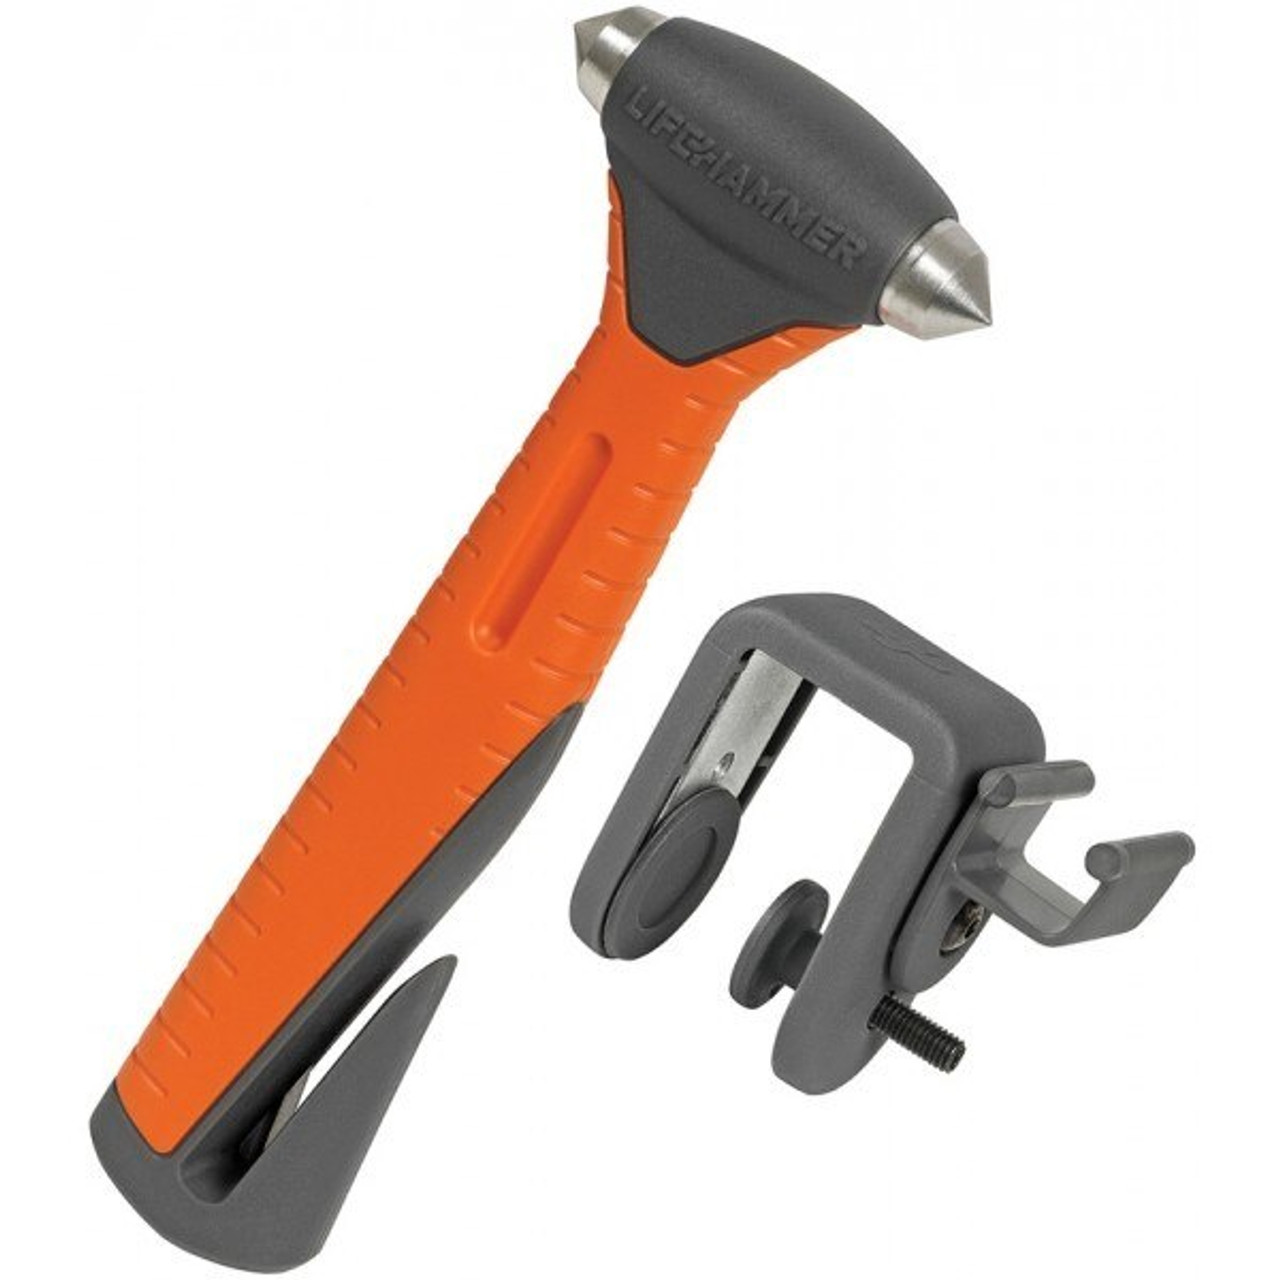 LifeHammer Safety Hammer - Plus